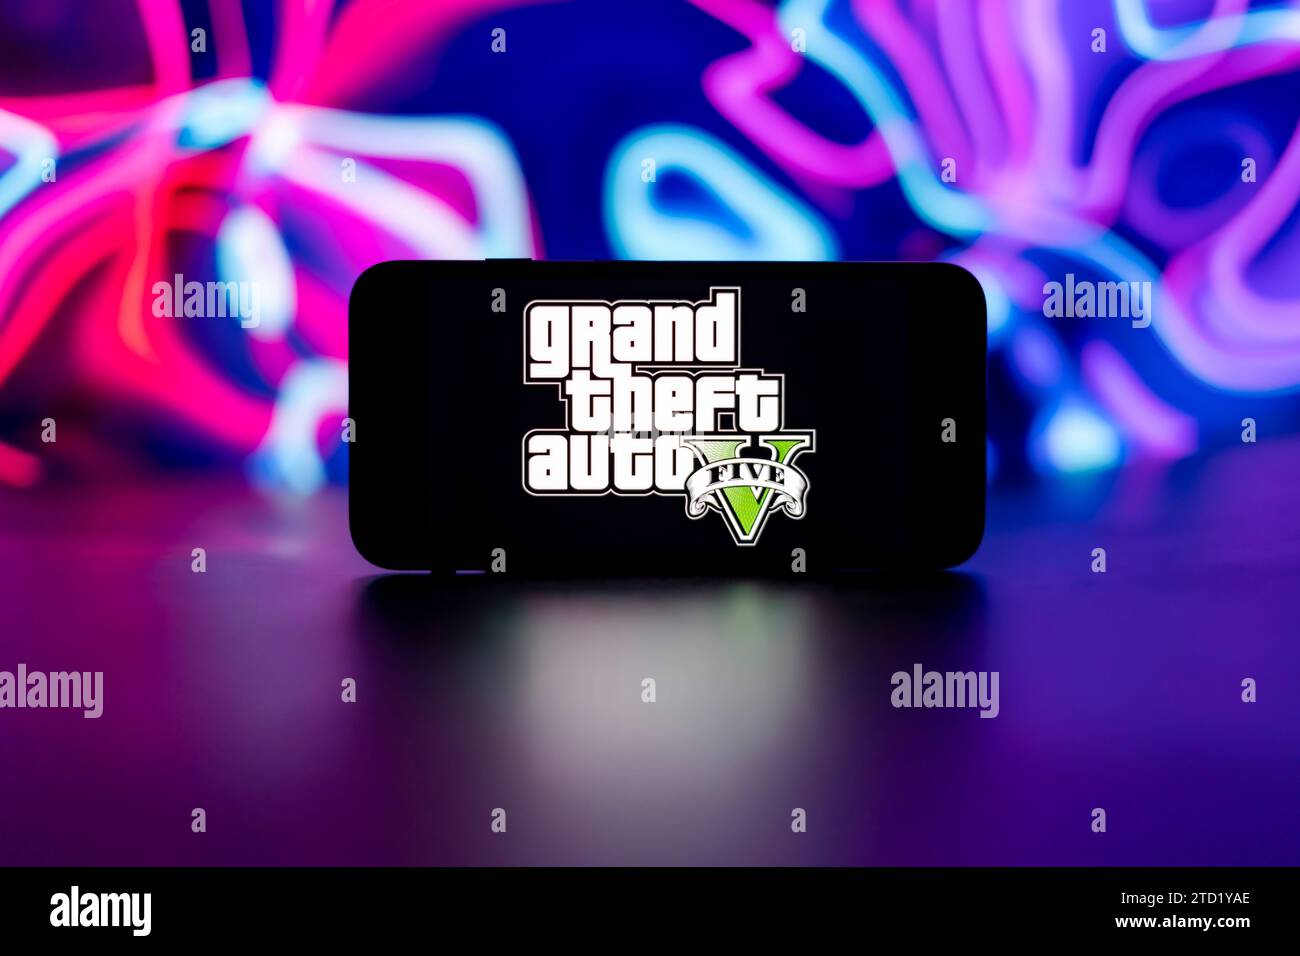 Sur cette photo, le logo Grand Theft auto V5 est affiché sur l'écran d'un téléphone portable. Banque D'Images